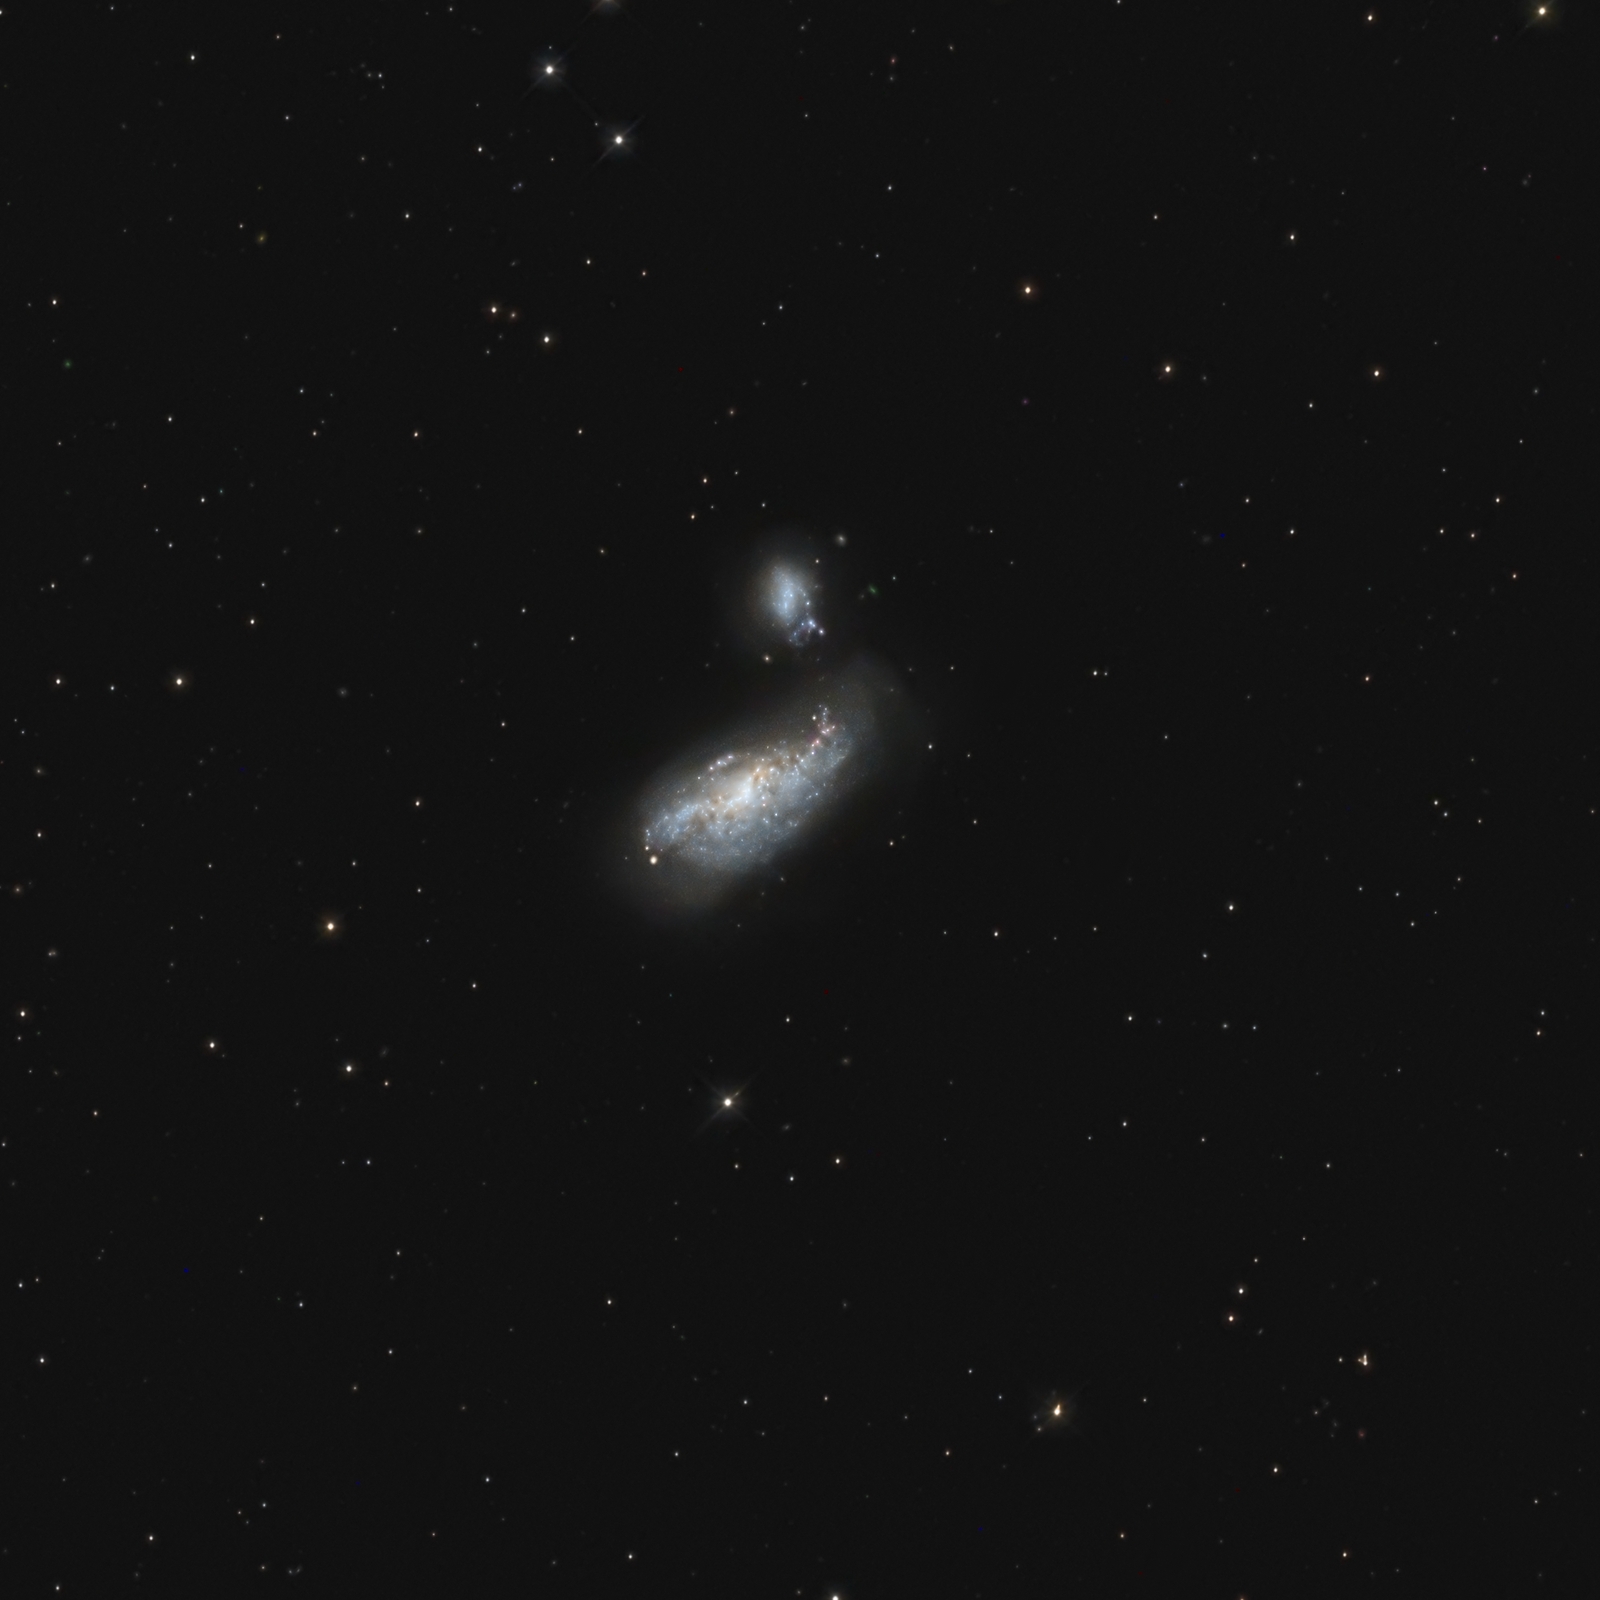 NGC 4631 and NGC 4656